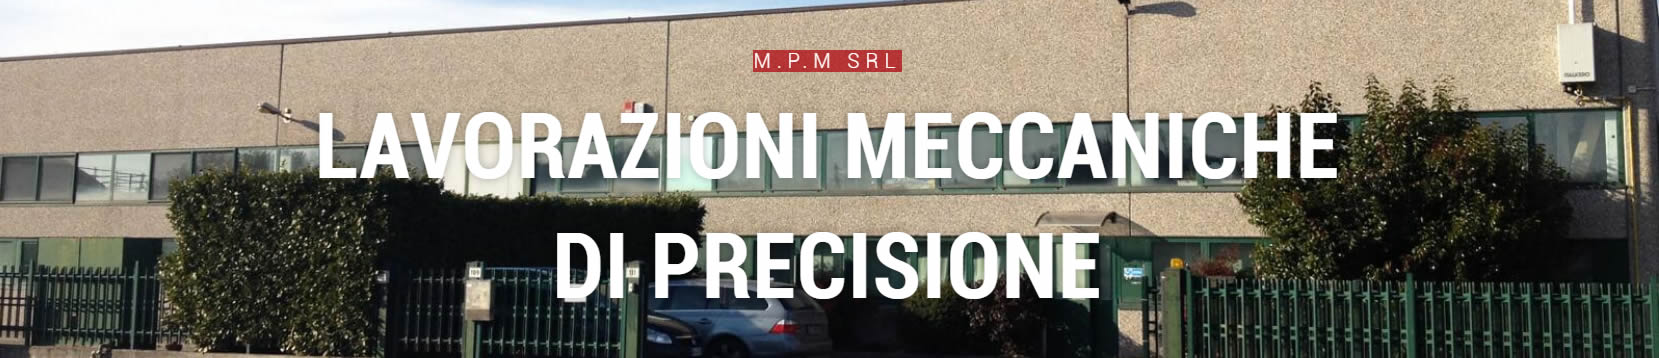 Officina meccanica di precisione Uboldo MPM srl